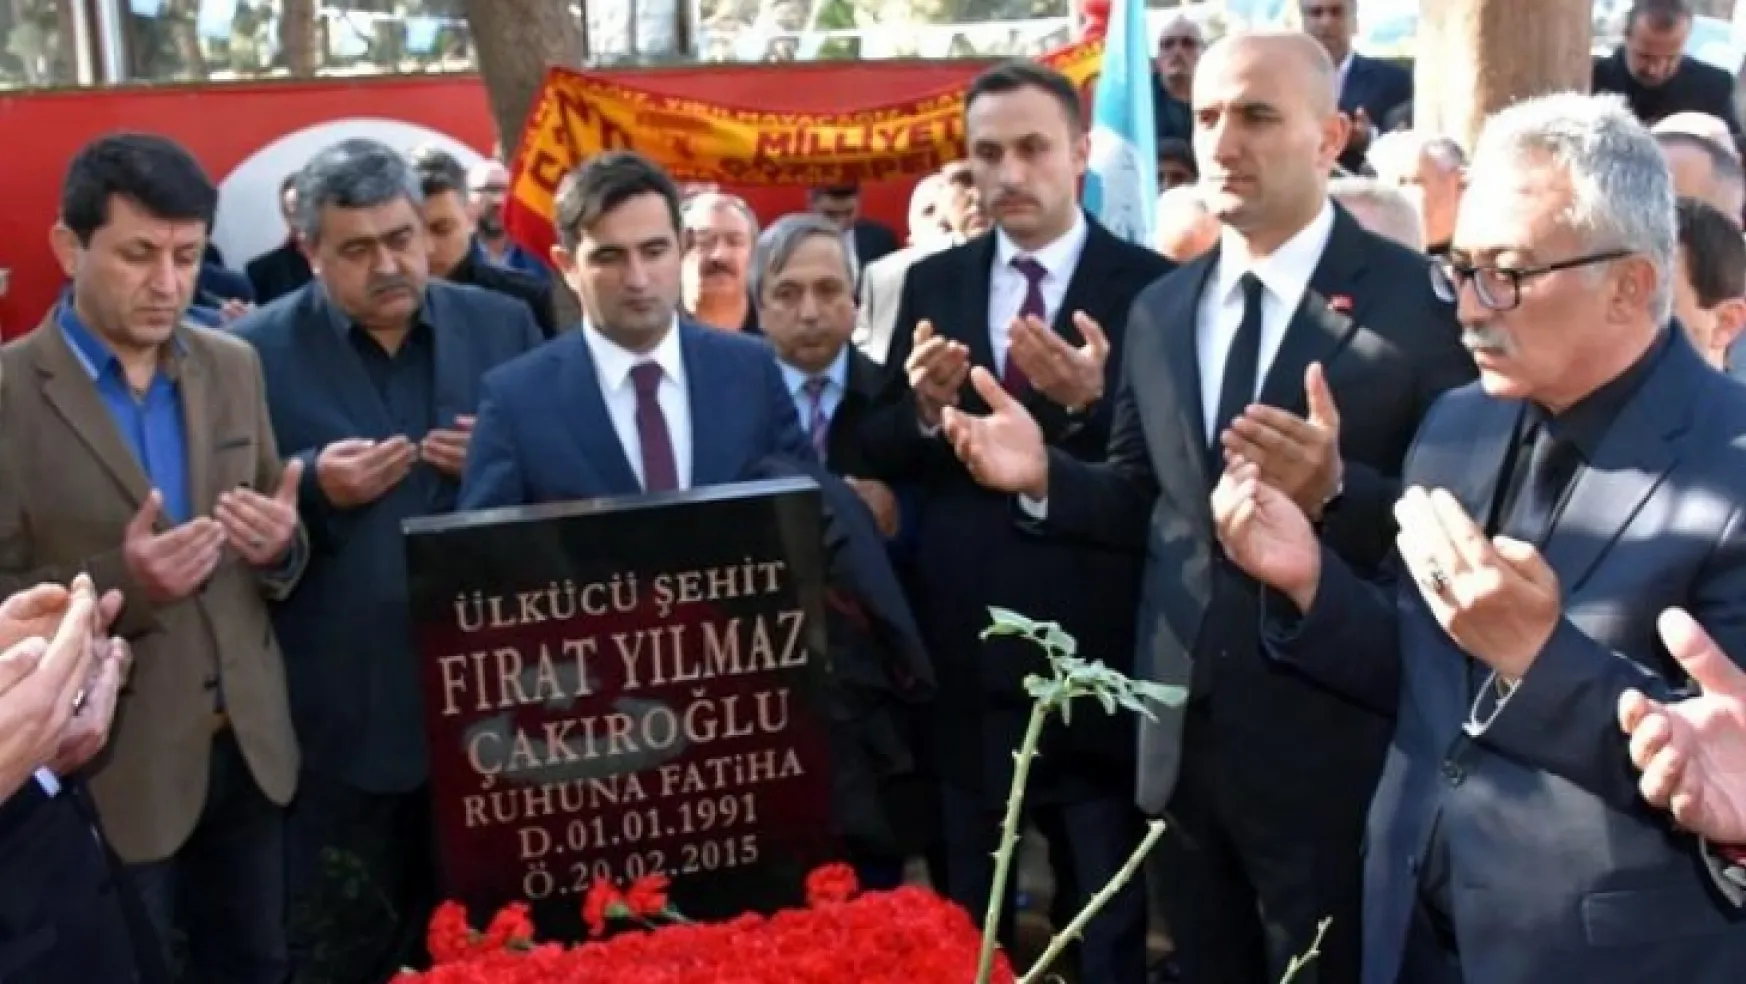 Ülkücü Şehit Fırat Yılmaz Çakıroğlu mezarı başında anıldı